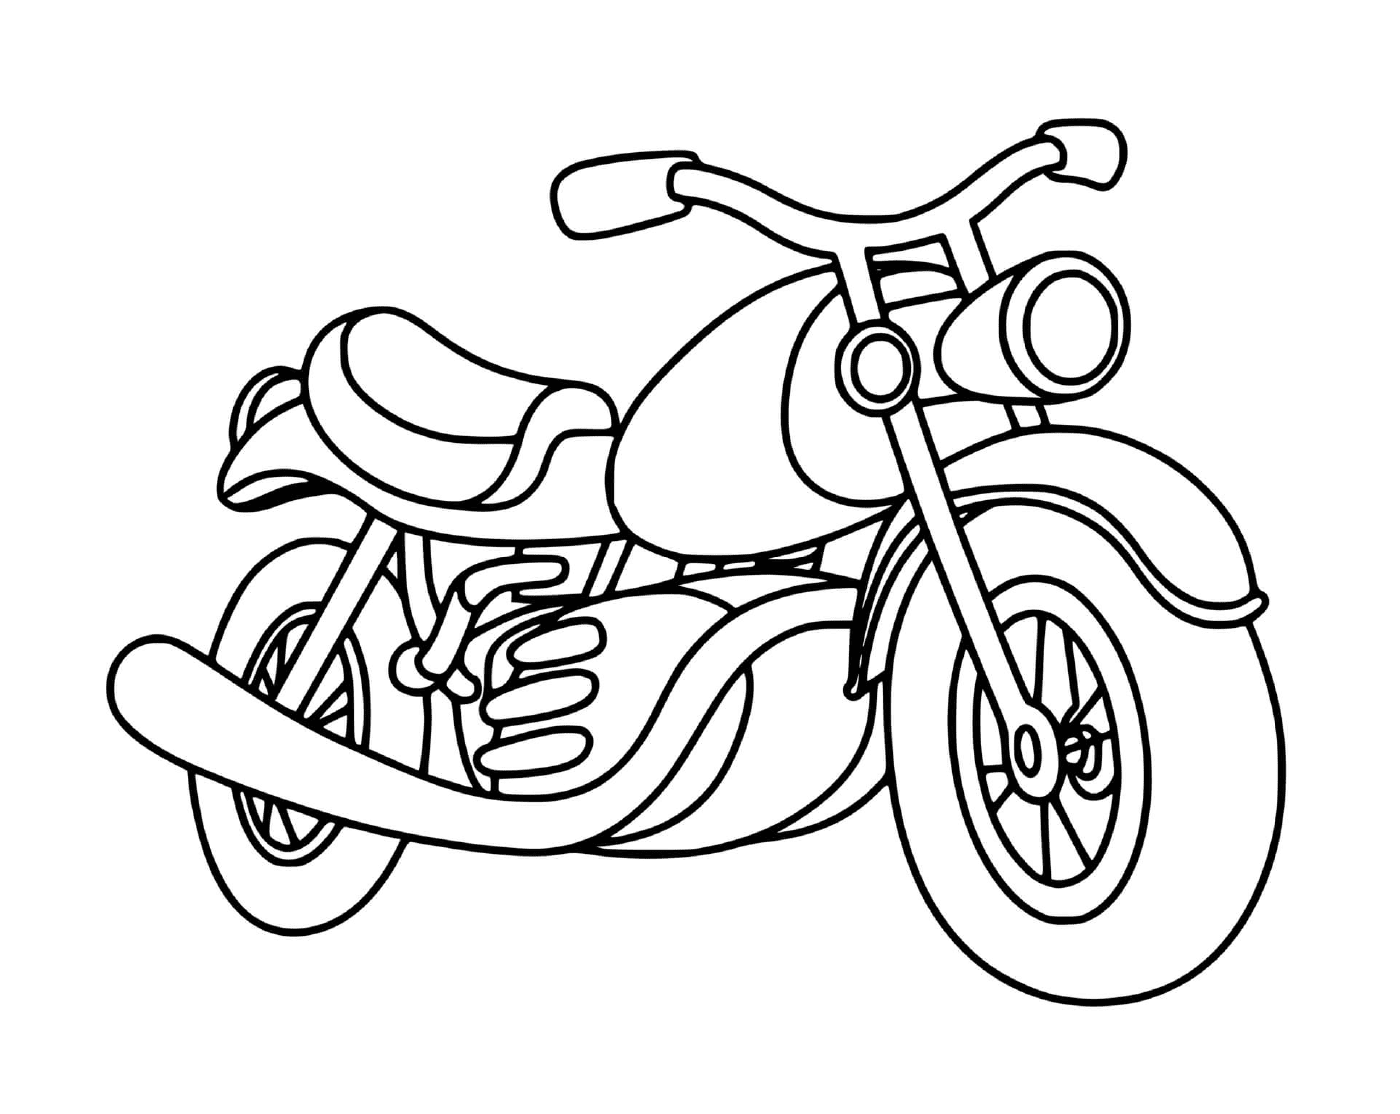  Motocicleta clássica colocada no chão 